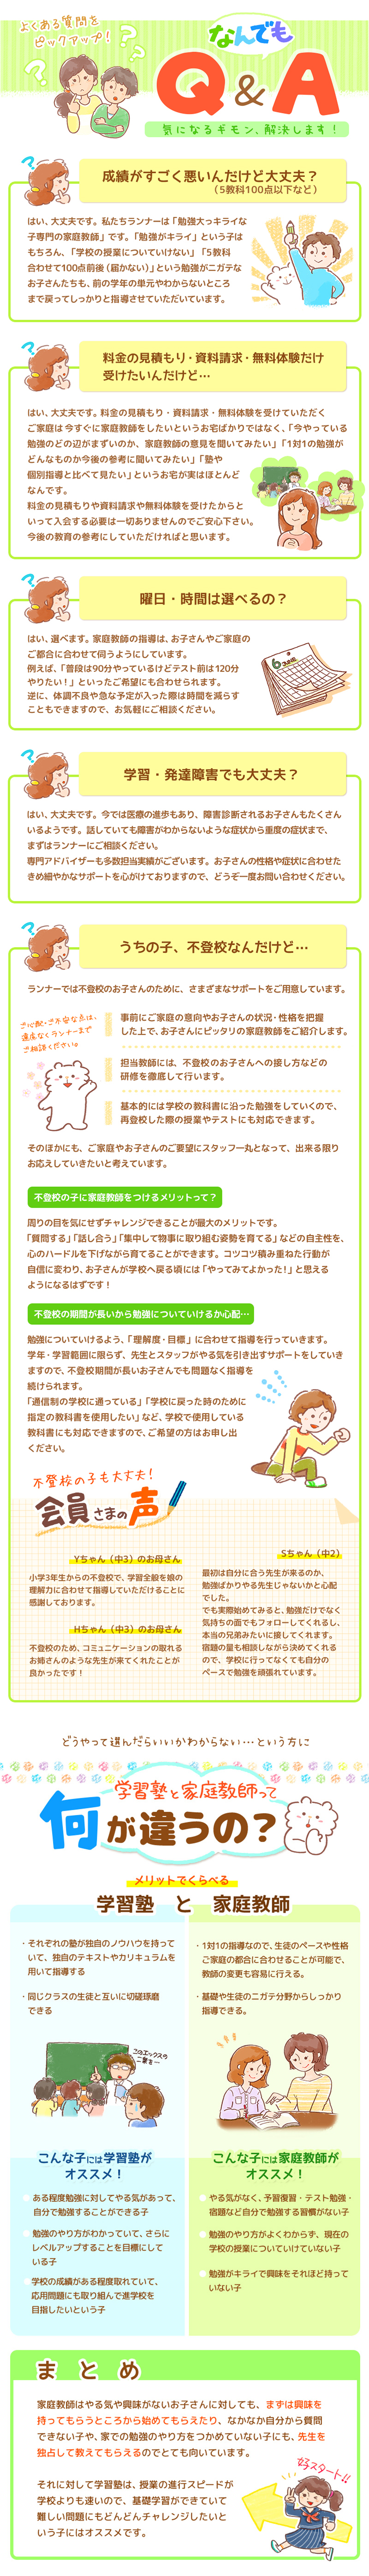 【家庭教師-熊本県-下益城郡のお客様のページ】【画像が表示されない場合はページ下部に画像と同じ内容をテキストで掲載していますのでそちらをご覧ください。】